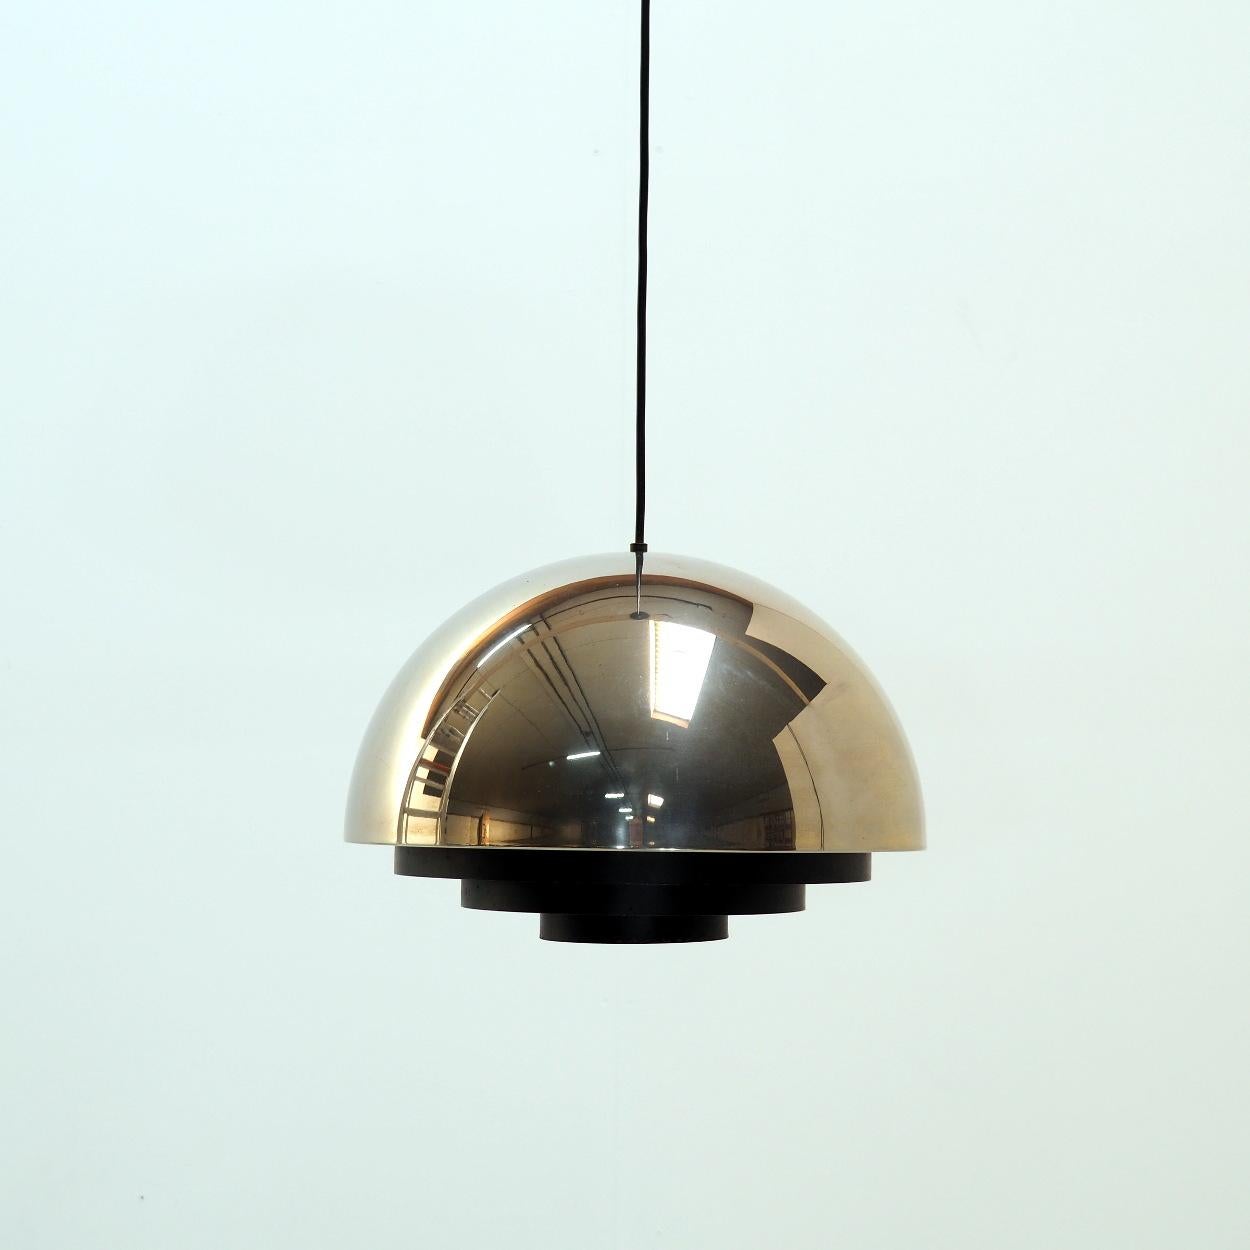 Hängeleuchte 'Milieu' von Jo Hammerborg für den dänischen Hersteller Fog & Morup.

Dies ist die Messingversion mit einem schwarz lackierten Metalldiffusor. Ein Entwurf aus den 1960er Jahren.

Die Lampe ist in gutem Vintage-Zustand mit altersgemäßen